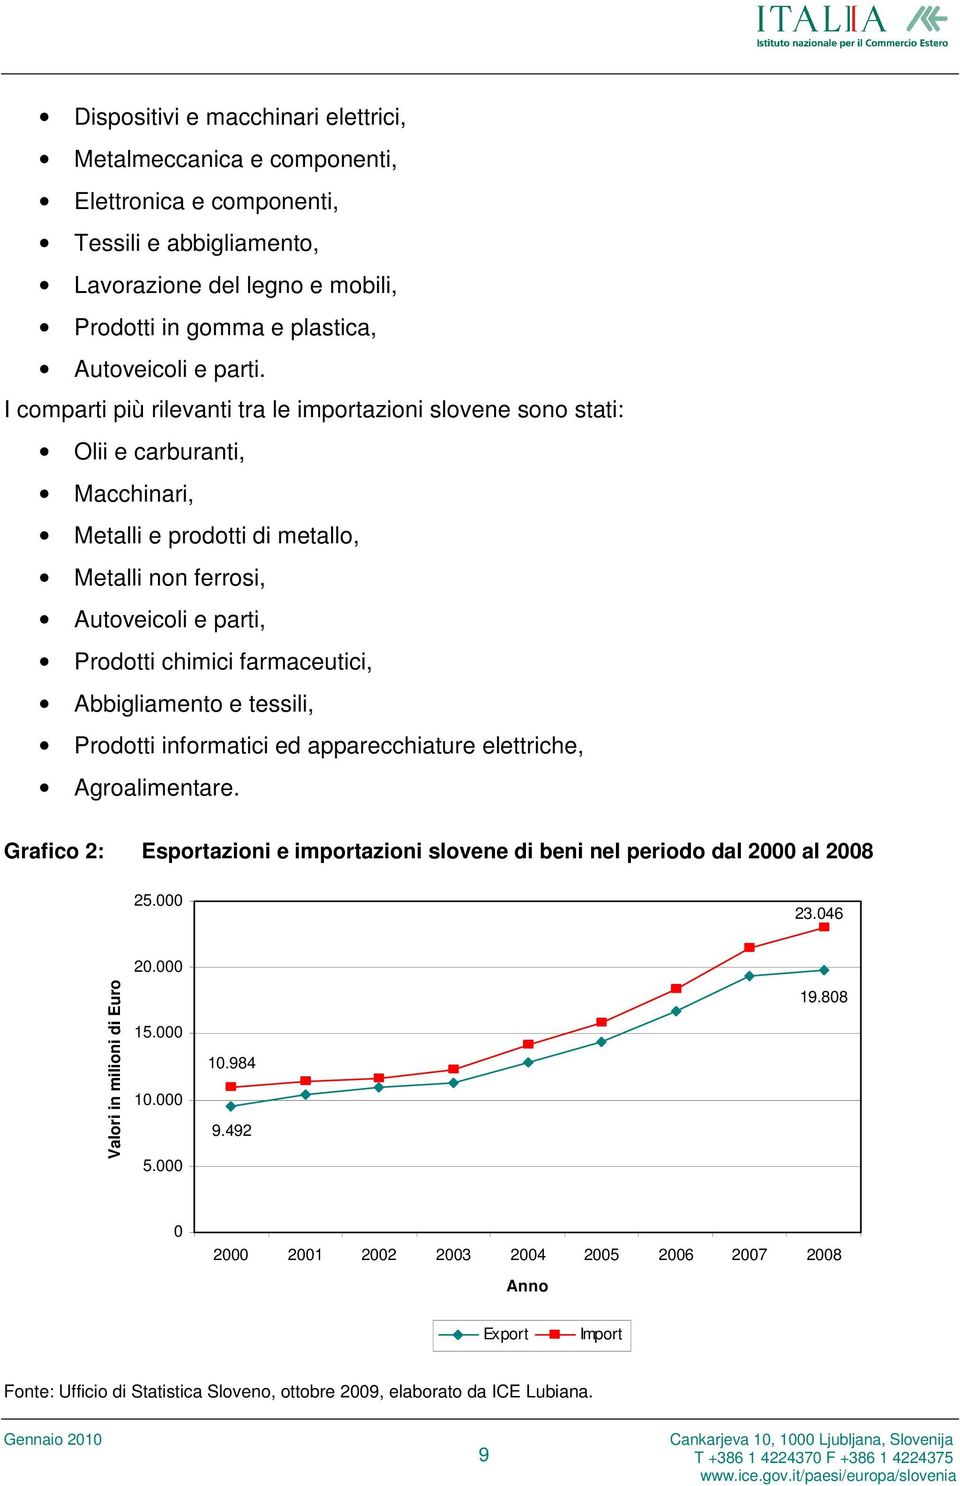 Abbigliamento e tessili, Prodotti informatici ed apparecchiature elettriche, Agroalimentare. Grafico 2: Esportazioni e importazioni slovene di beni nel periodo dal 2000 al 2008 25.000 23.046 20.